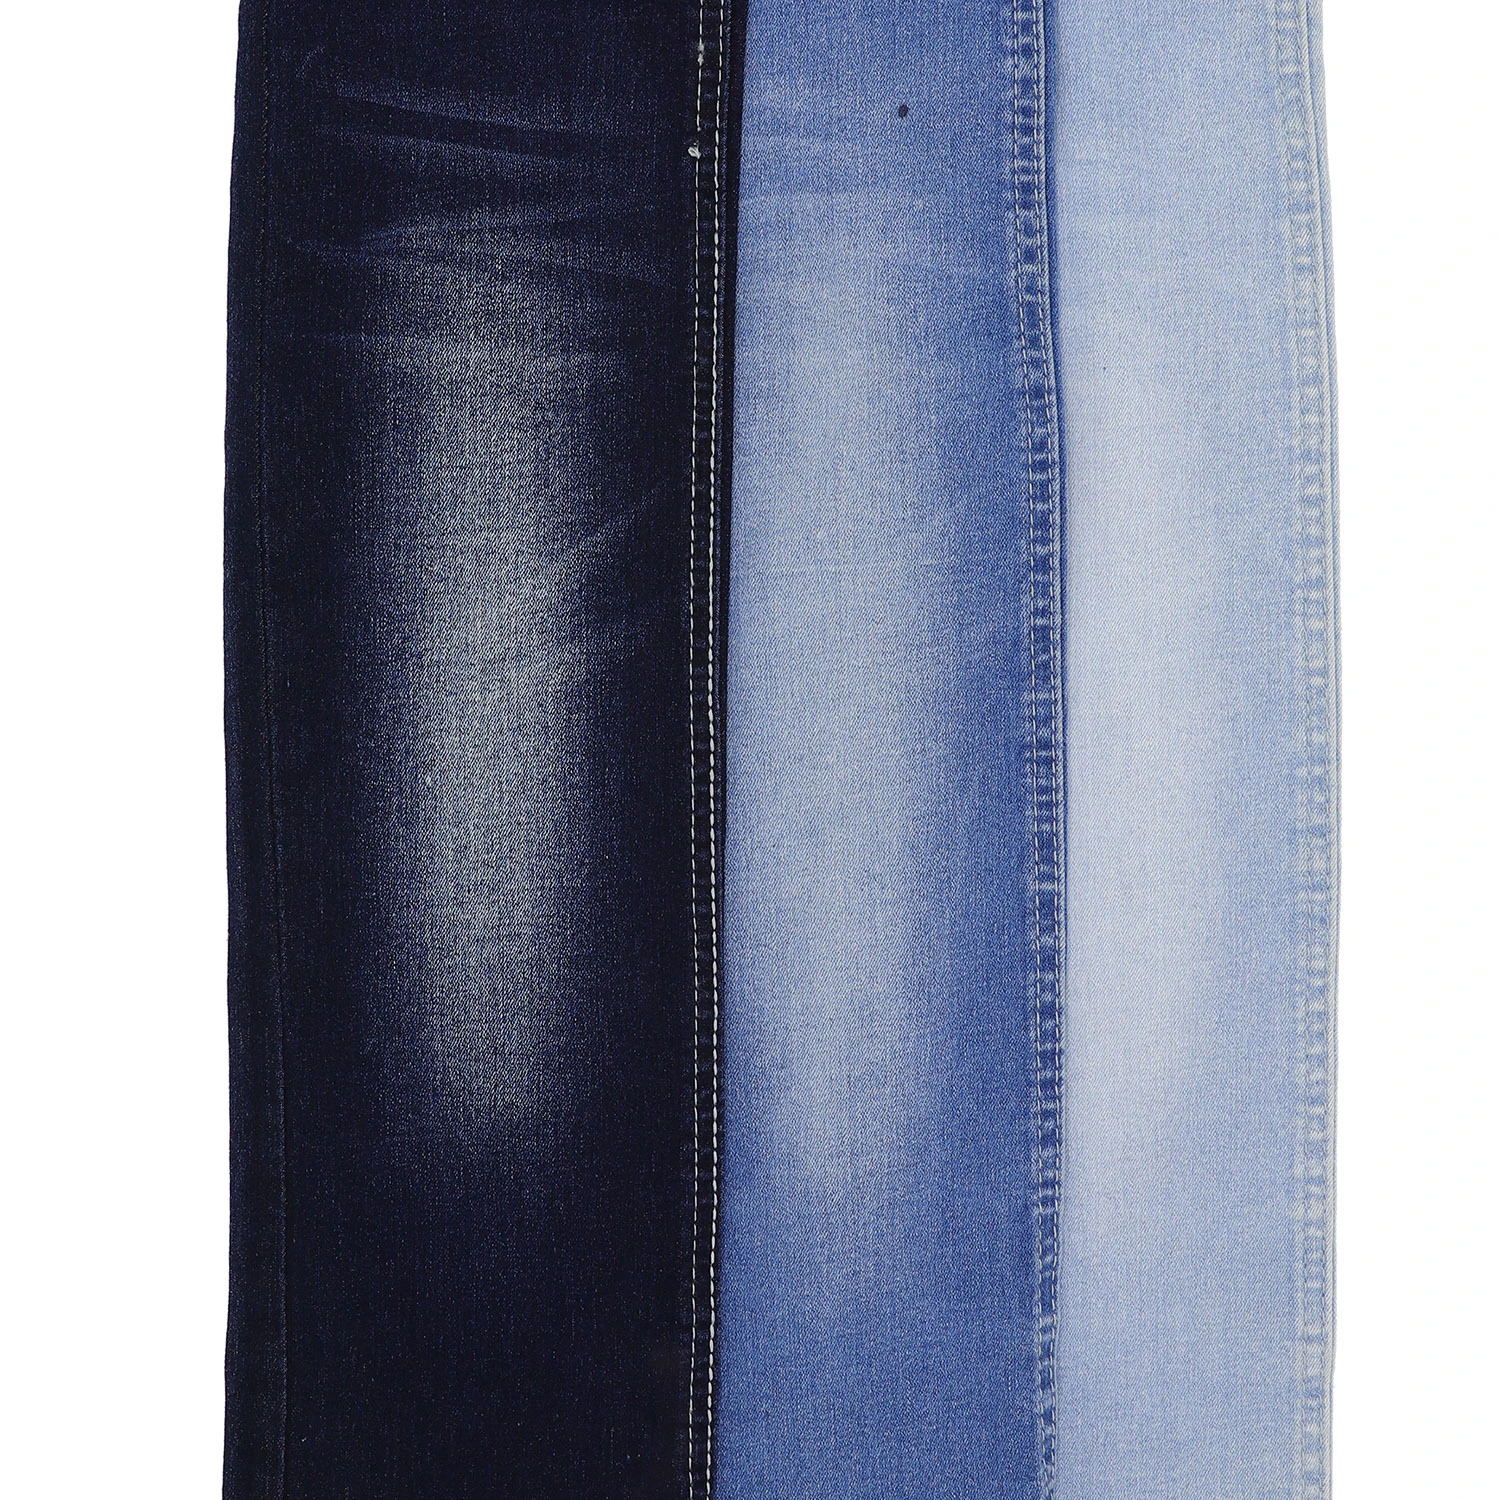 205F-3 10.4oz 10*21 Indigo Color High Stretch Cotton Denim Fabric for Jeans 1